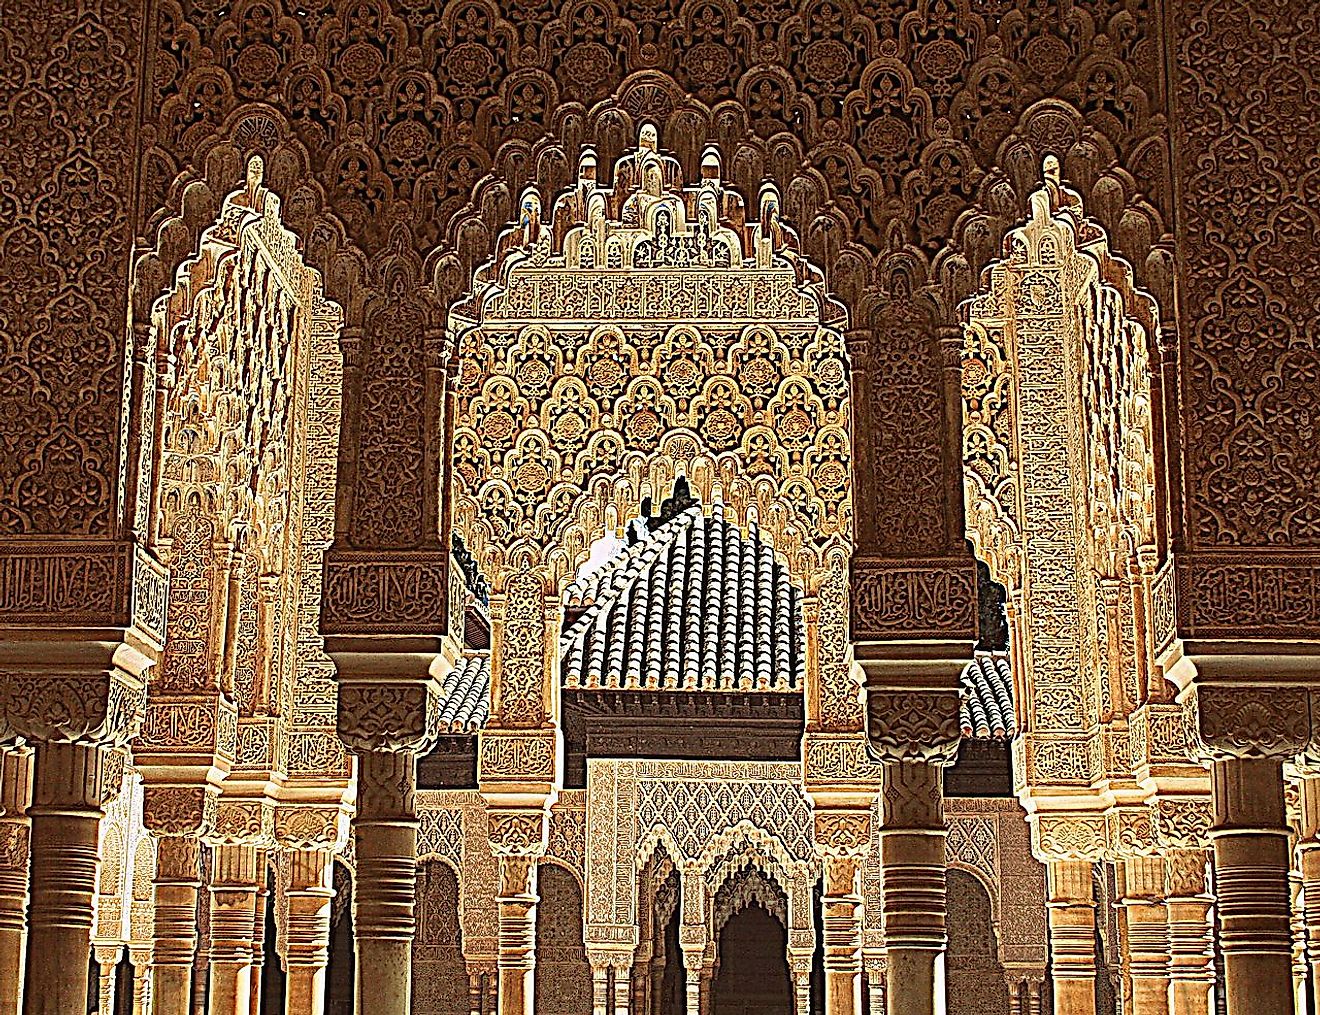 The impressive architecture of the Alhambra de Granada. Image credit: JaritahLu/Wikimedia.org